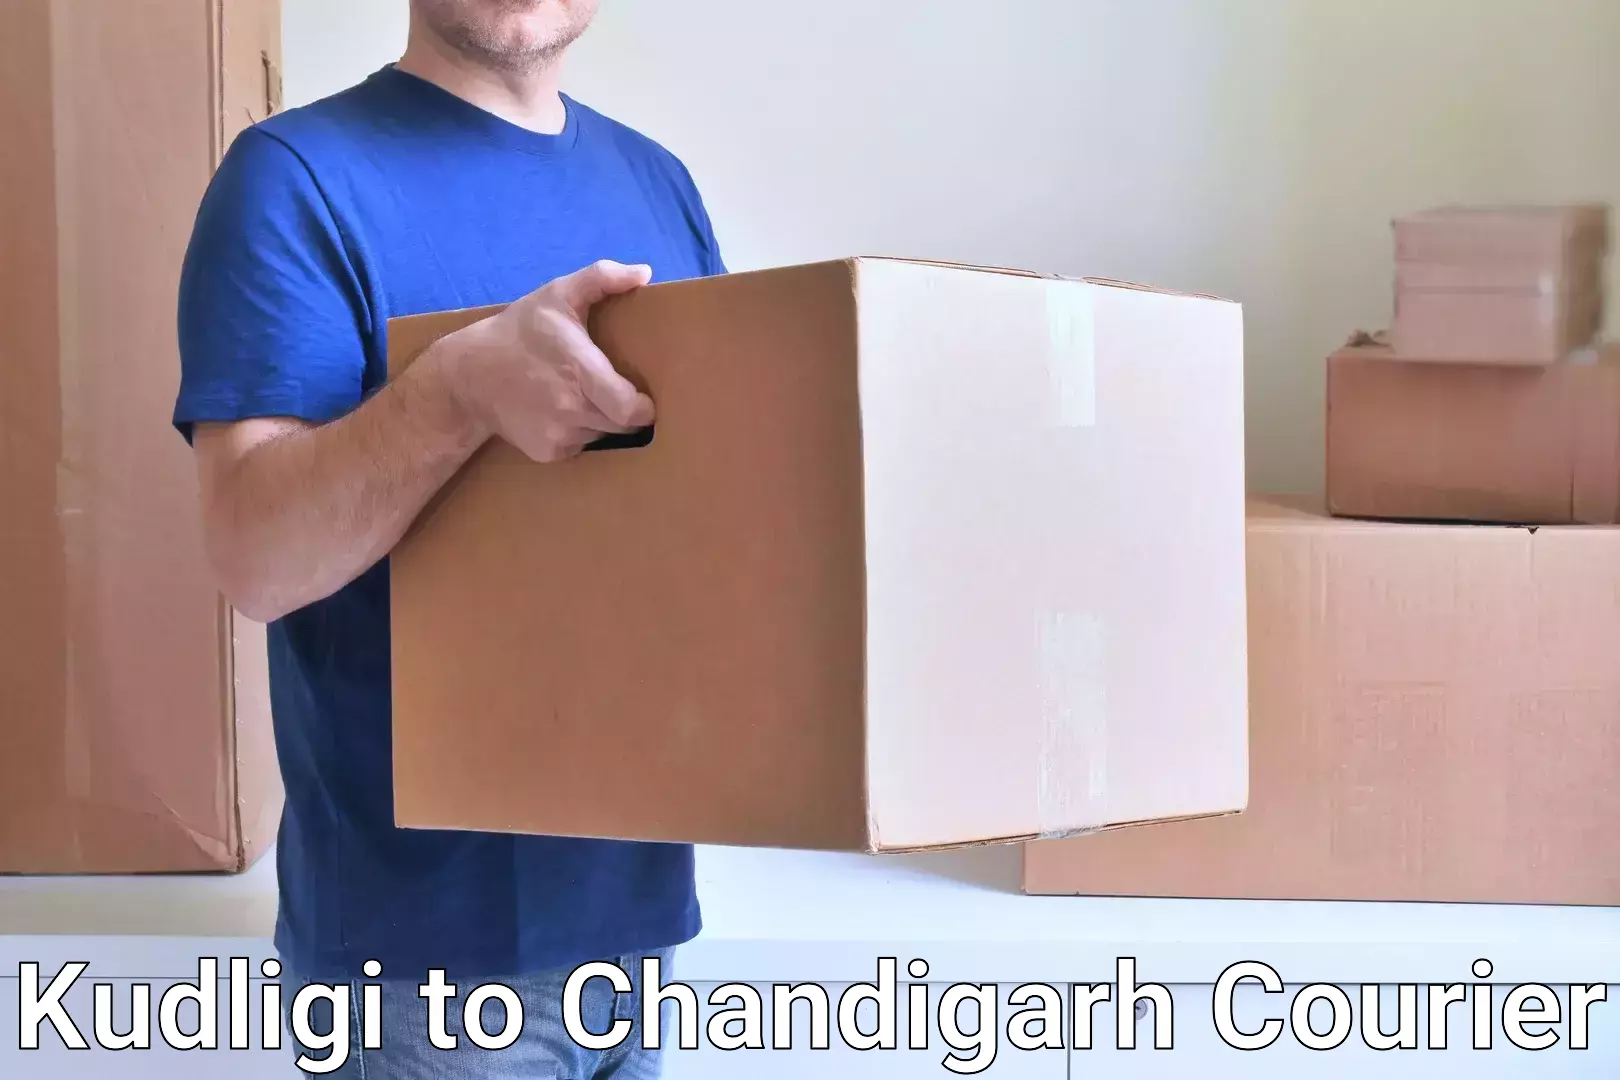 High-speed parcel service Kudligi to Chandigarh